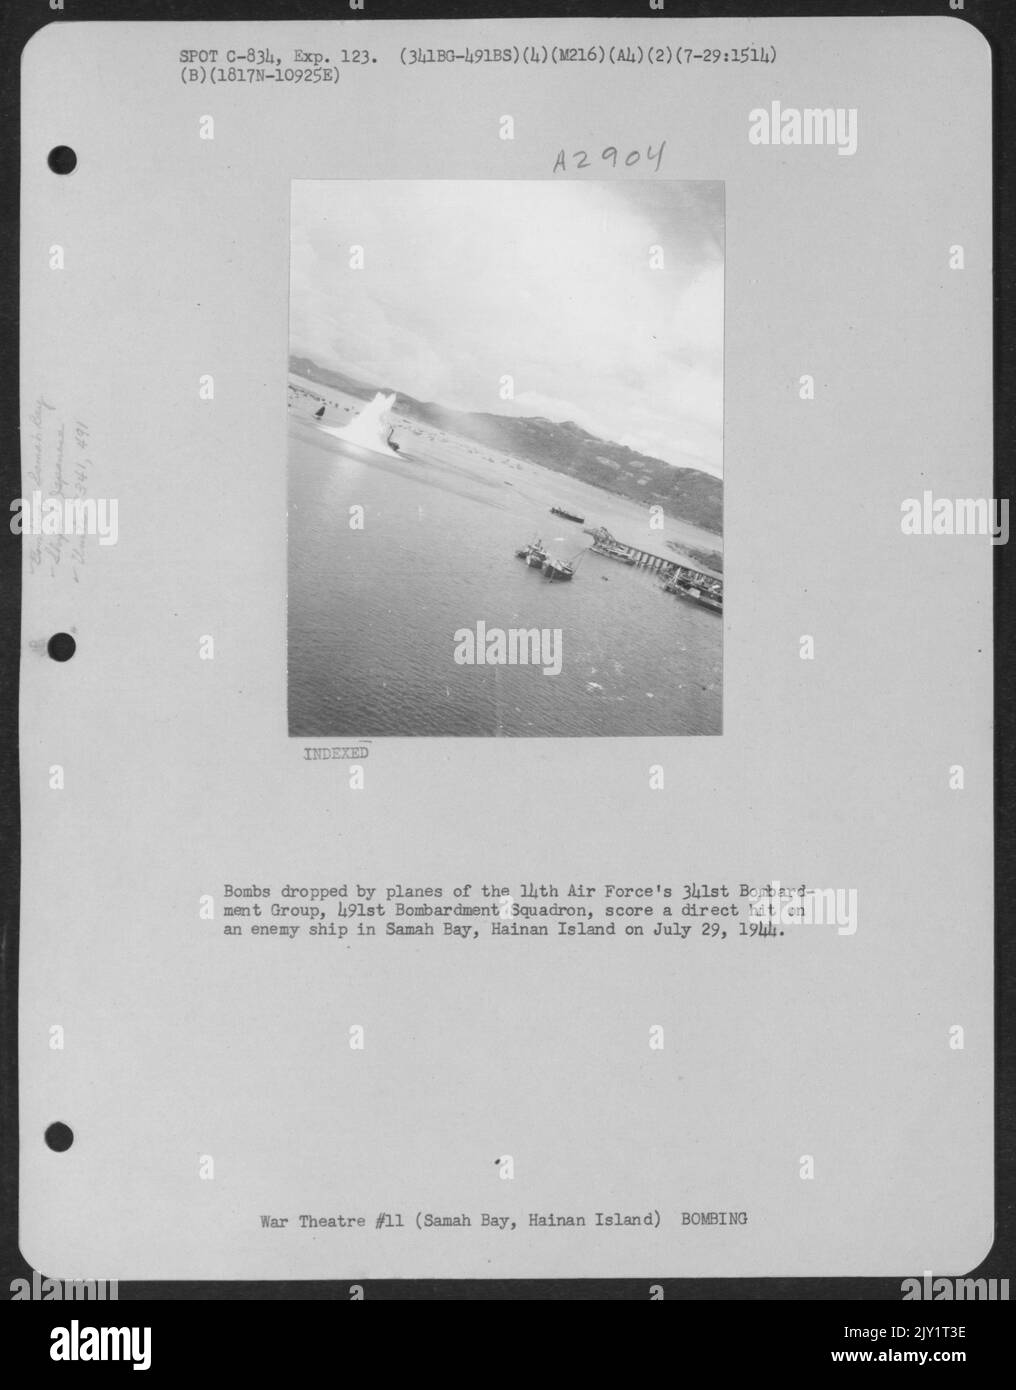 Bomben, die von Flugzeugen des 491St Bombardement Squadron der 14. Air Force, 341St Bombardment Group, abgeworfen wurden, erhalten Am 29. Juli 1944 einen direkten Treffer auf ein feindliches Schiff in Samah Bay, Hainan Island. Stockfoto